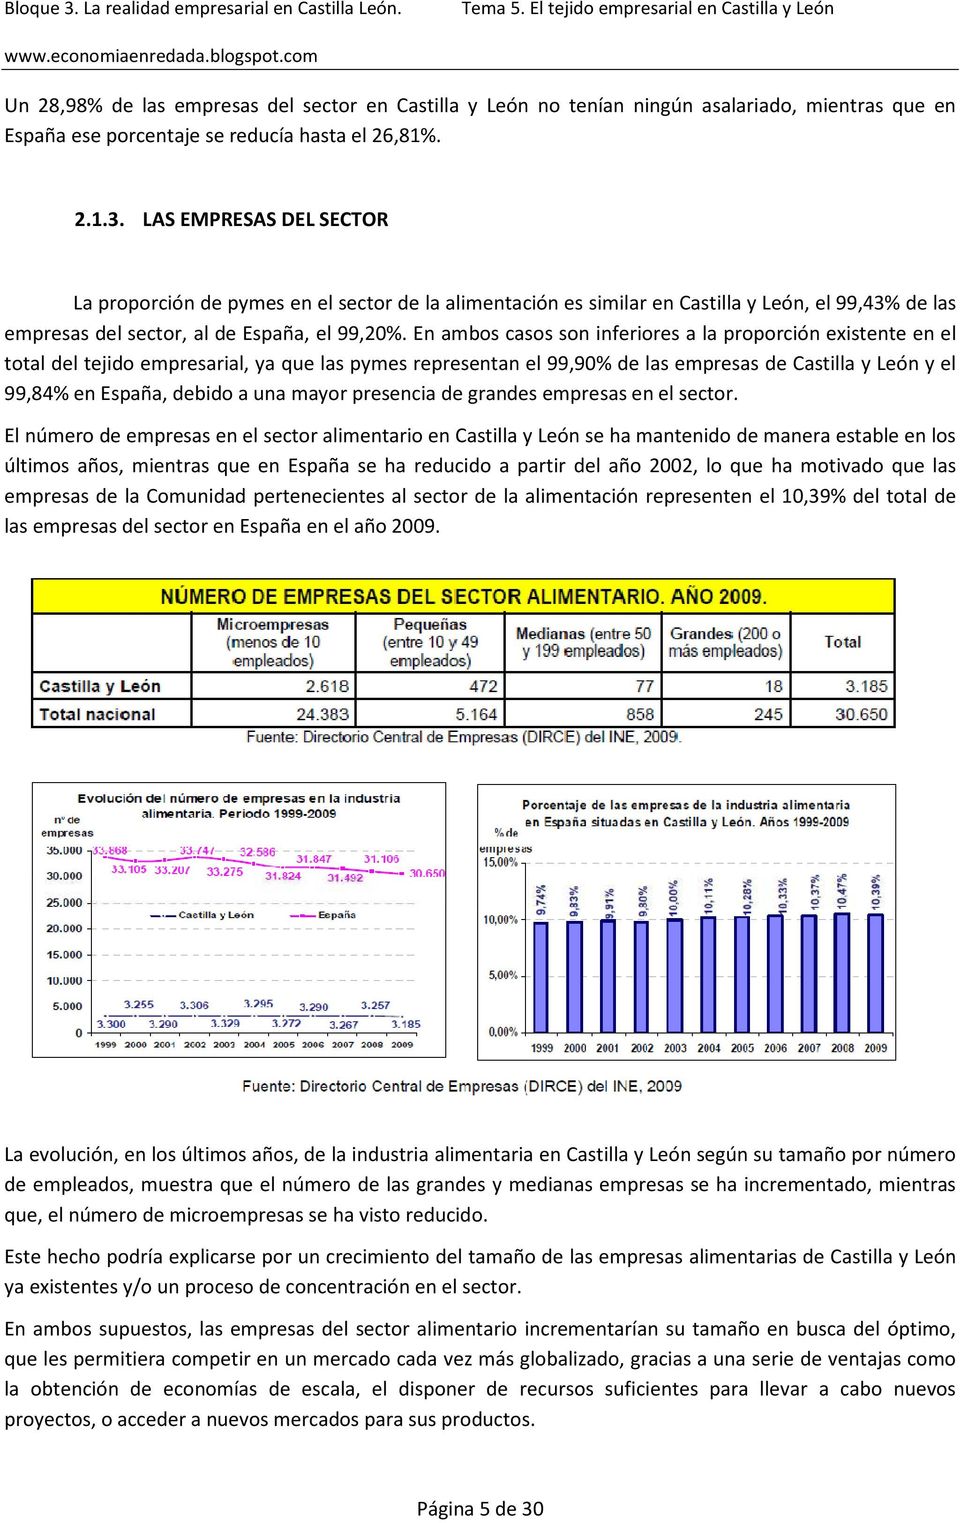 En ambos casos son inferiores a la proporción existente en el total del tejido empresarial, ya que las pymes representan el 99,90% de las empresas de Castilla y León y el 99,84% en España, debido a